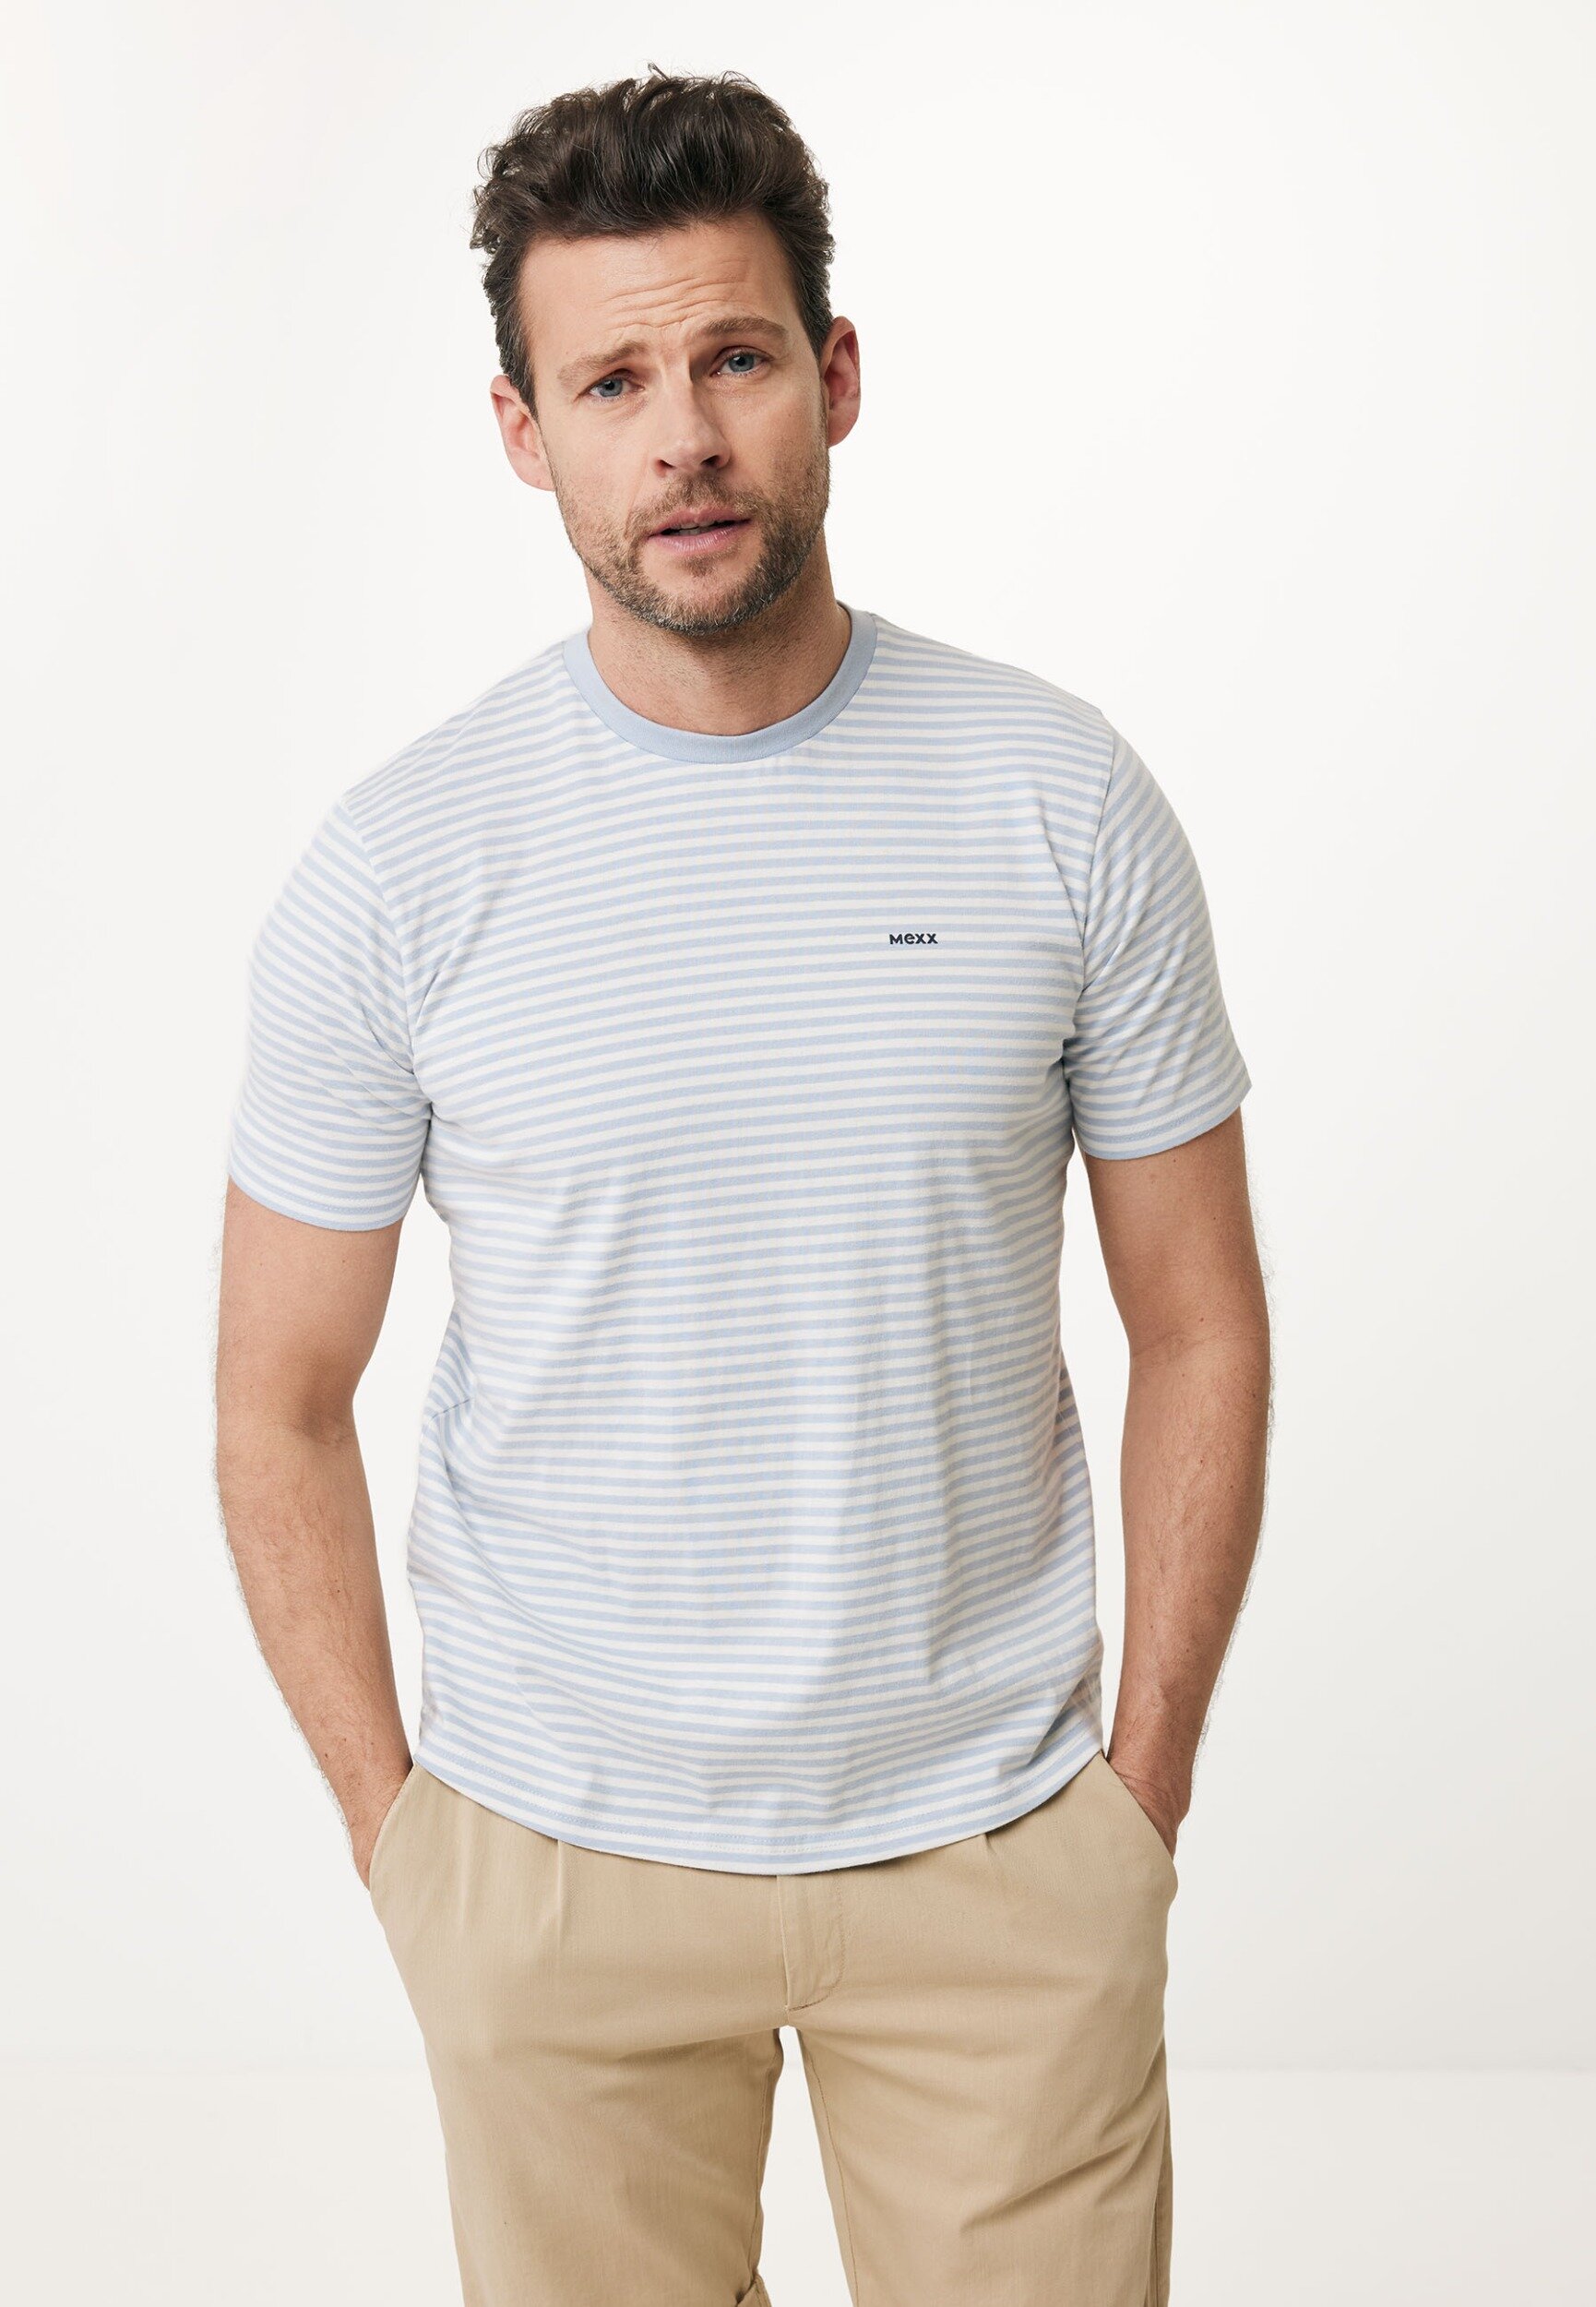 Mexx Short Sleeve T-shirt With Yarn Dye Stripes Mannen - Lichtblauw - Maat L